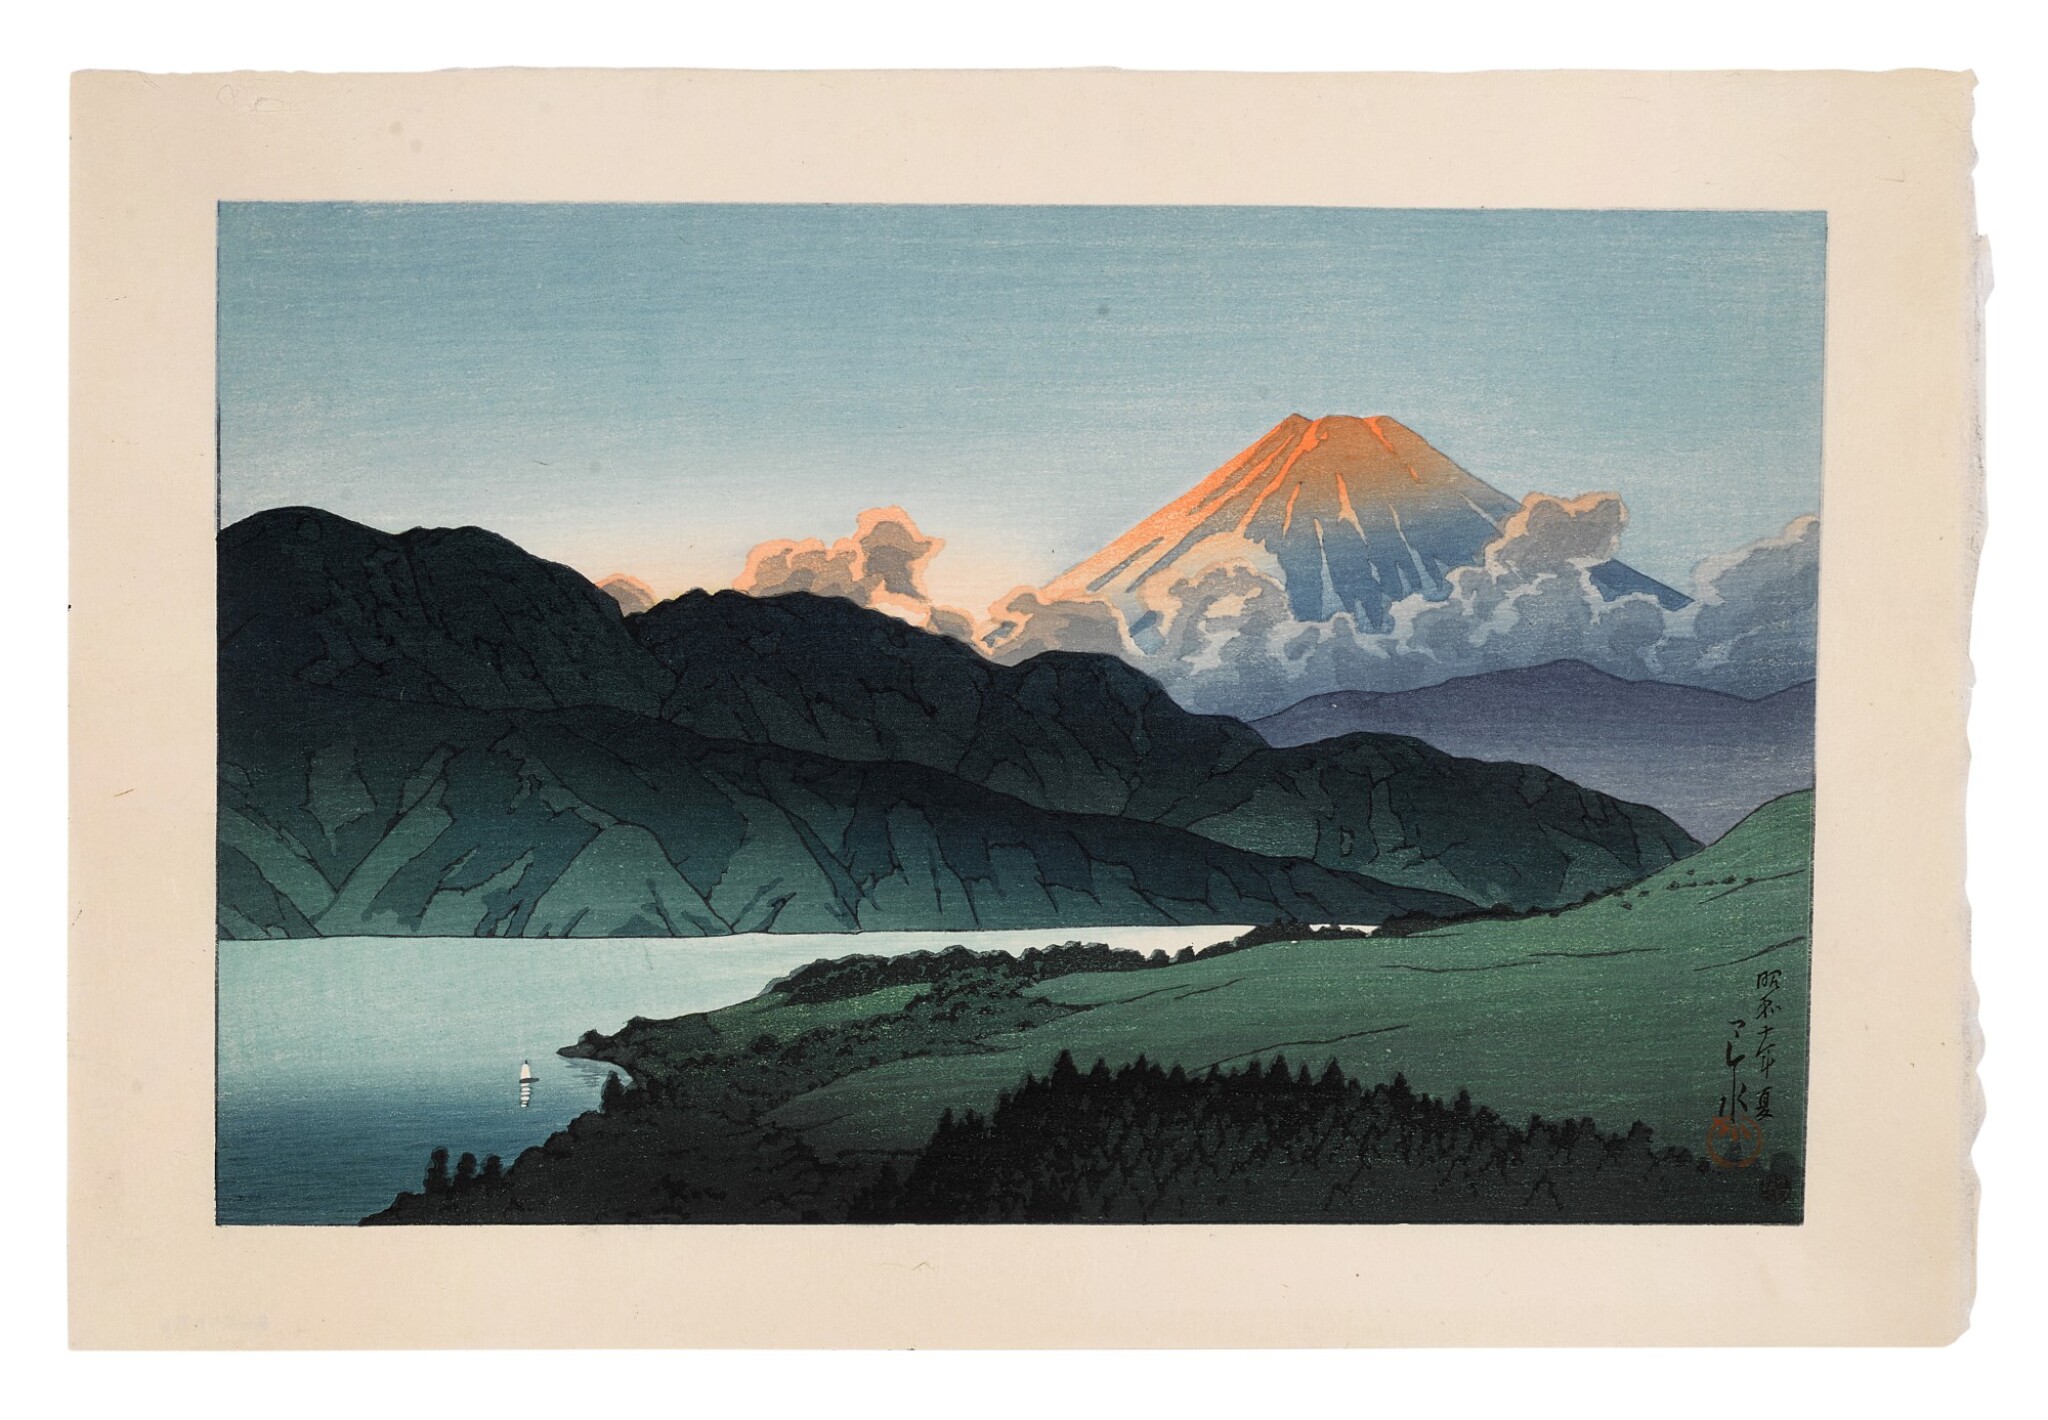 Kawase Hasui - A Nocturnal Fuji, Lake Ashino (Ashinoko no yu Fuji), 1935